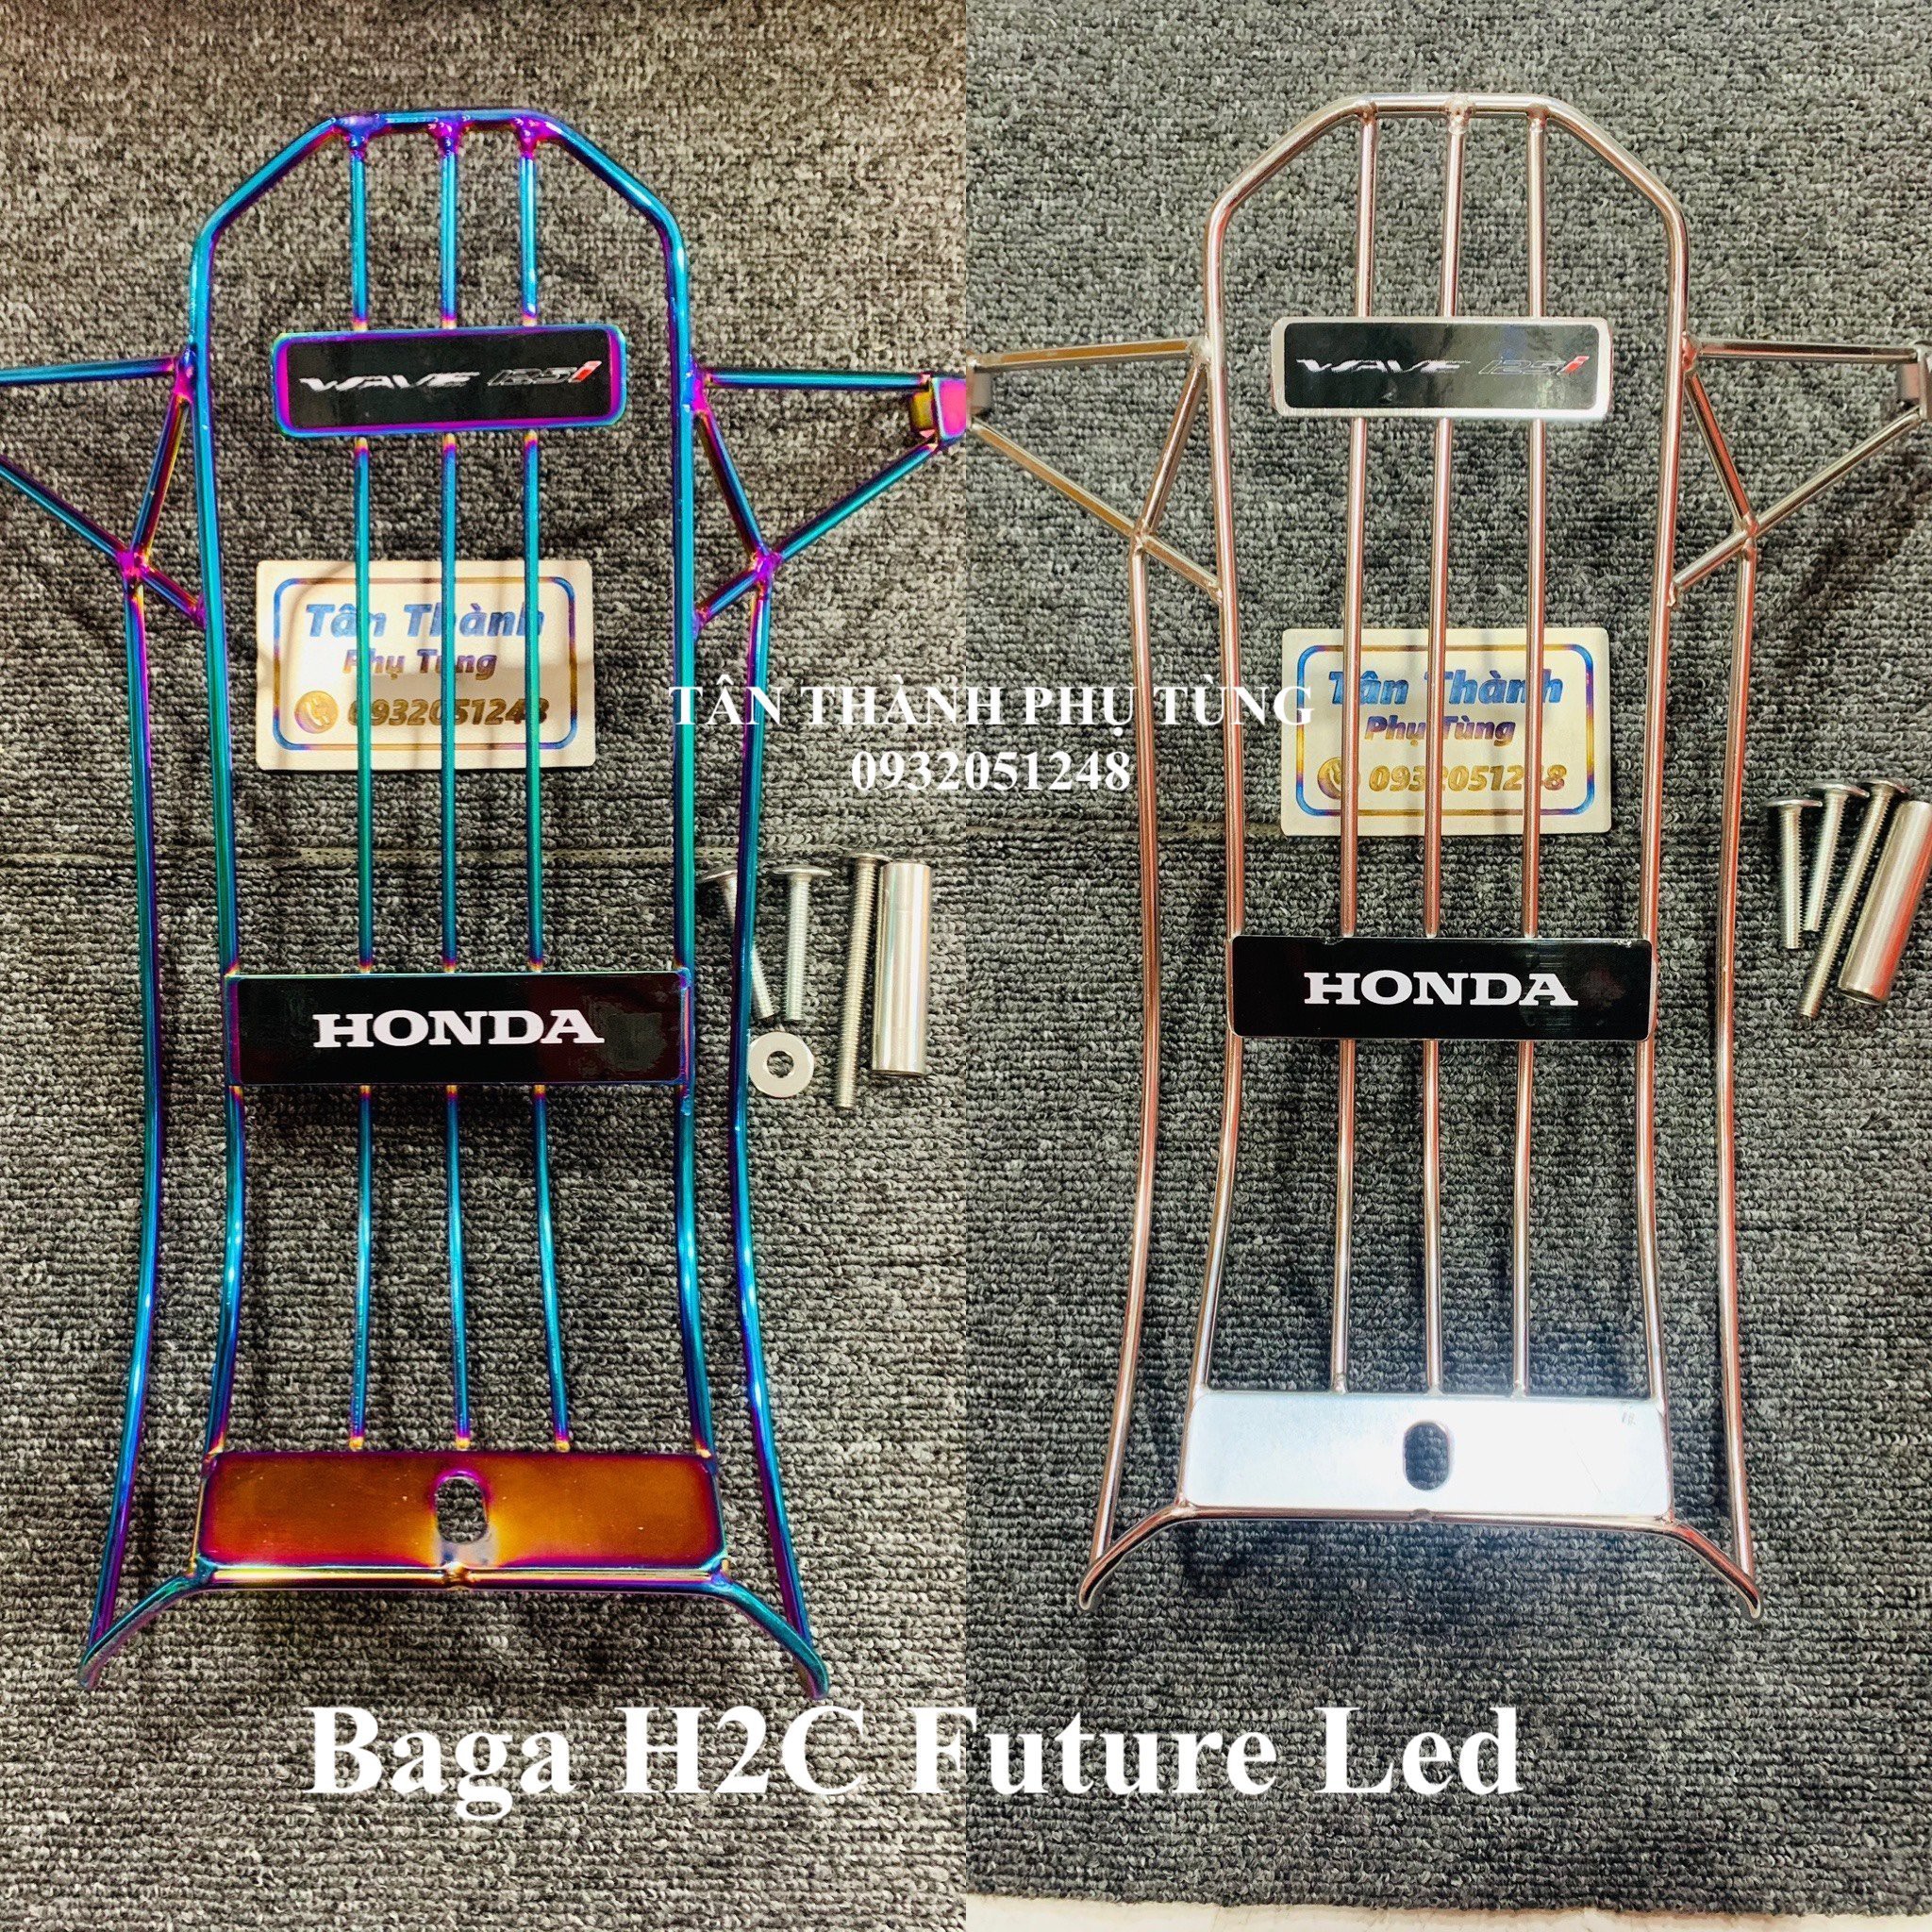 Baga H2C Future Led 2018-2021, Wave 125i Tân Thành PT